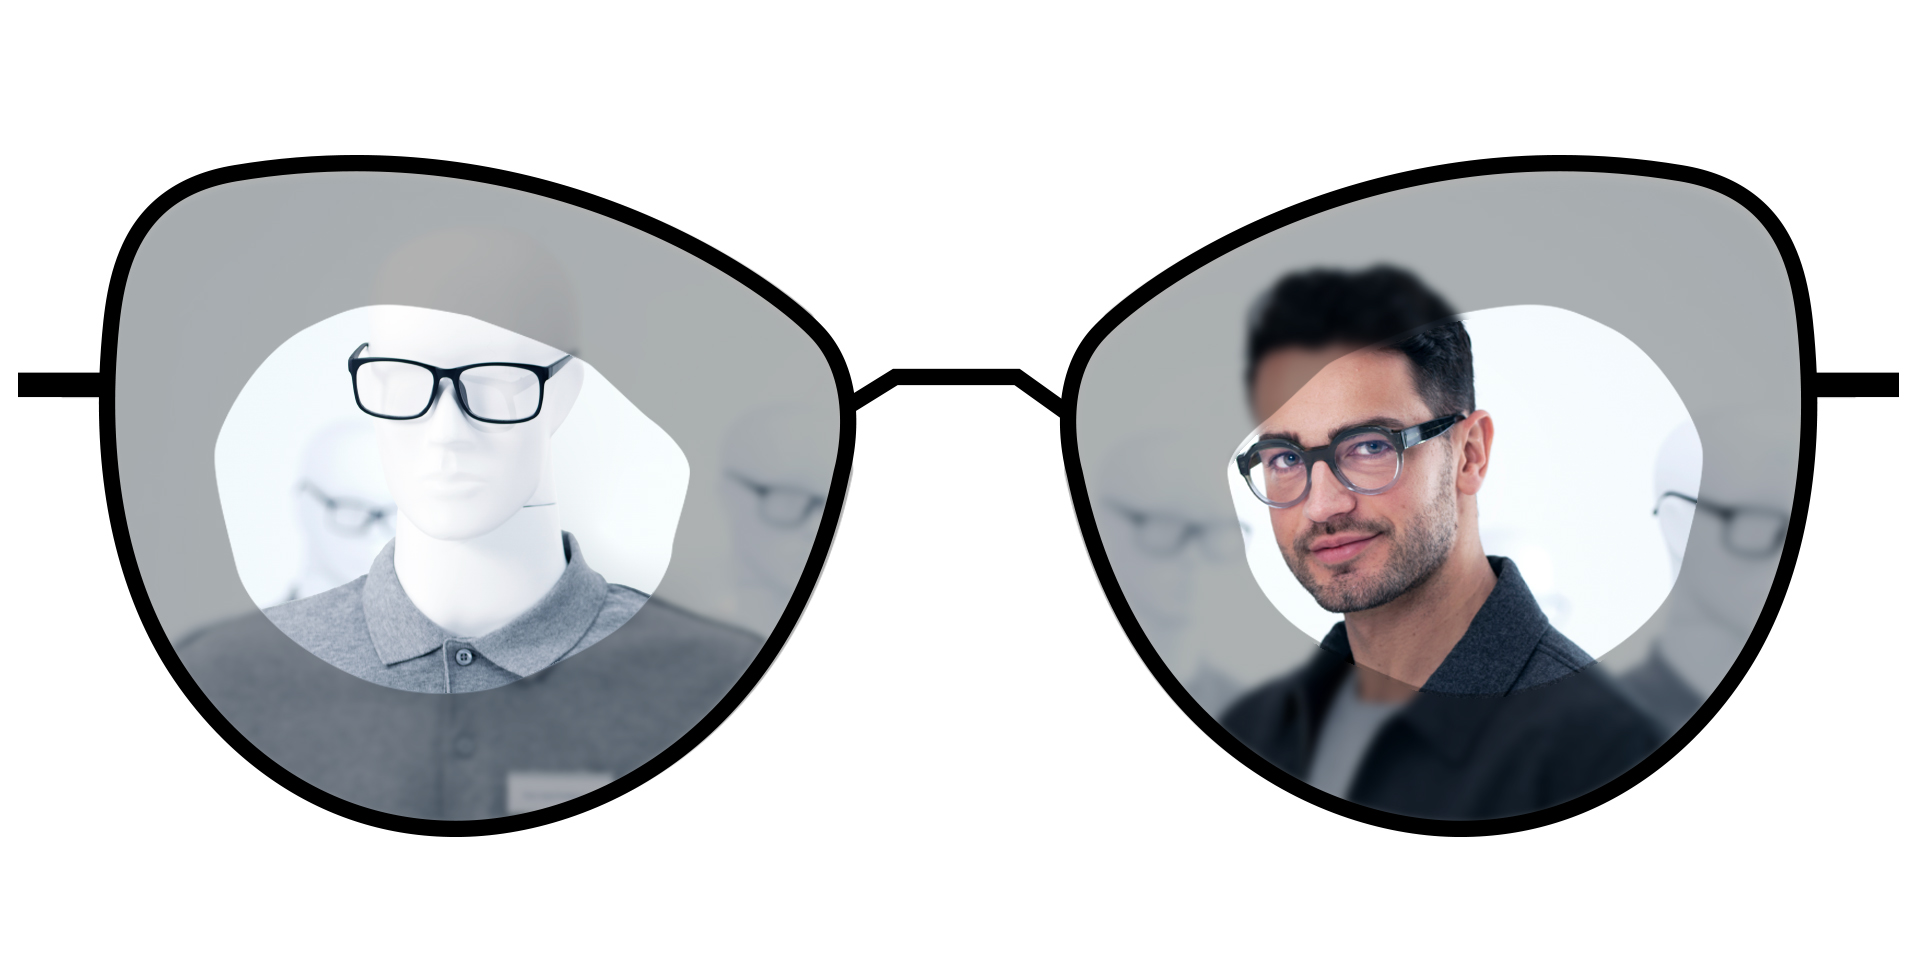 Ilustración de gafas que muestra las zonas borrosas de las lentes monofocales estándar en comparación con las grandes zonas claras de las lentes monofocales ZEISS ClearView.